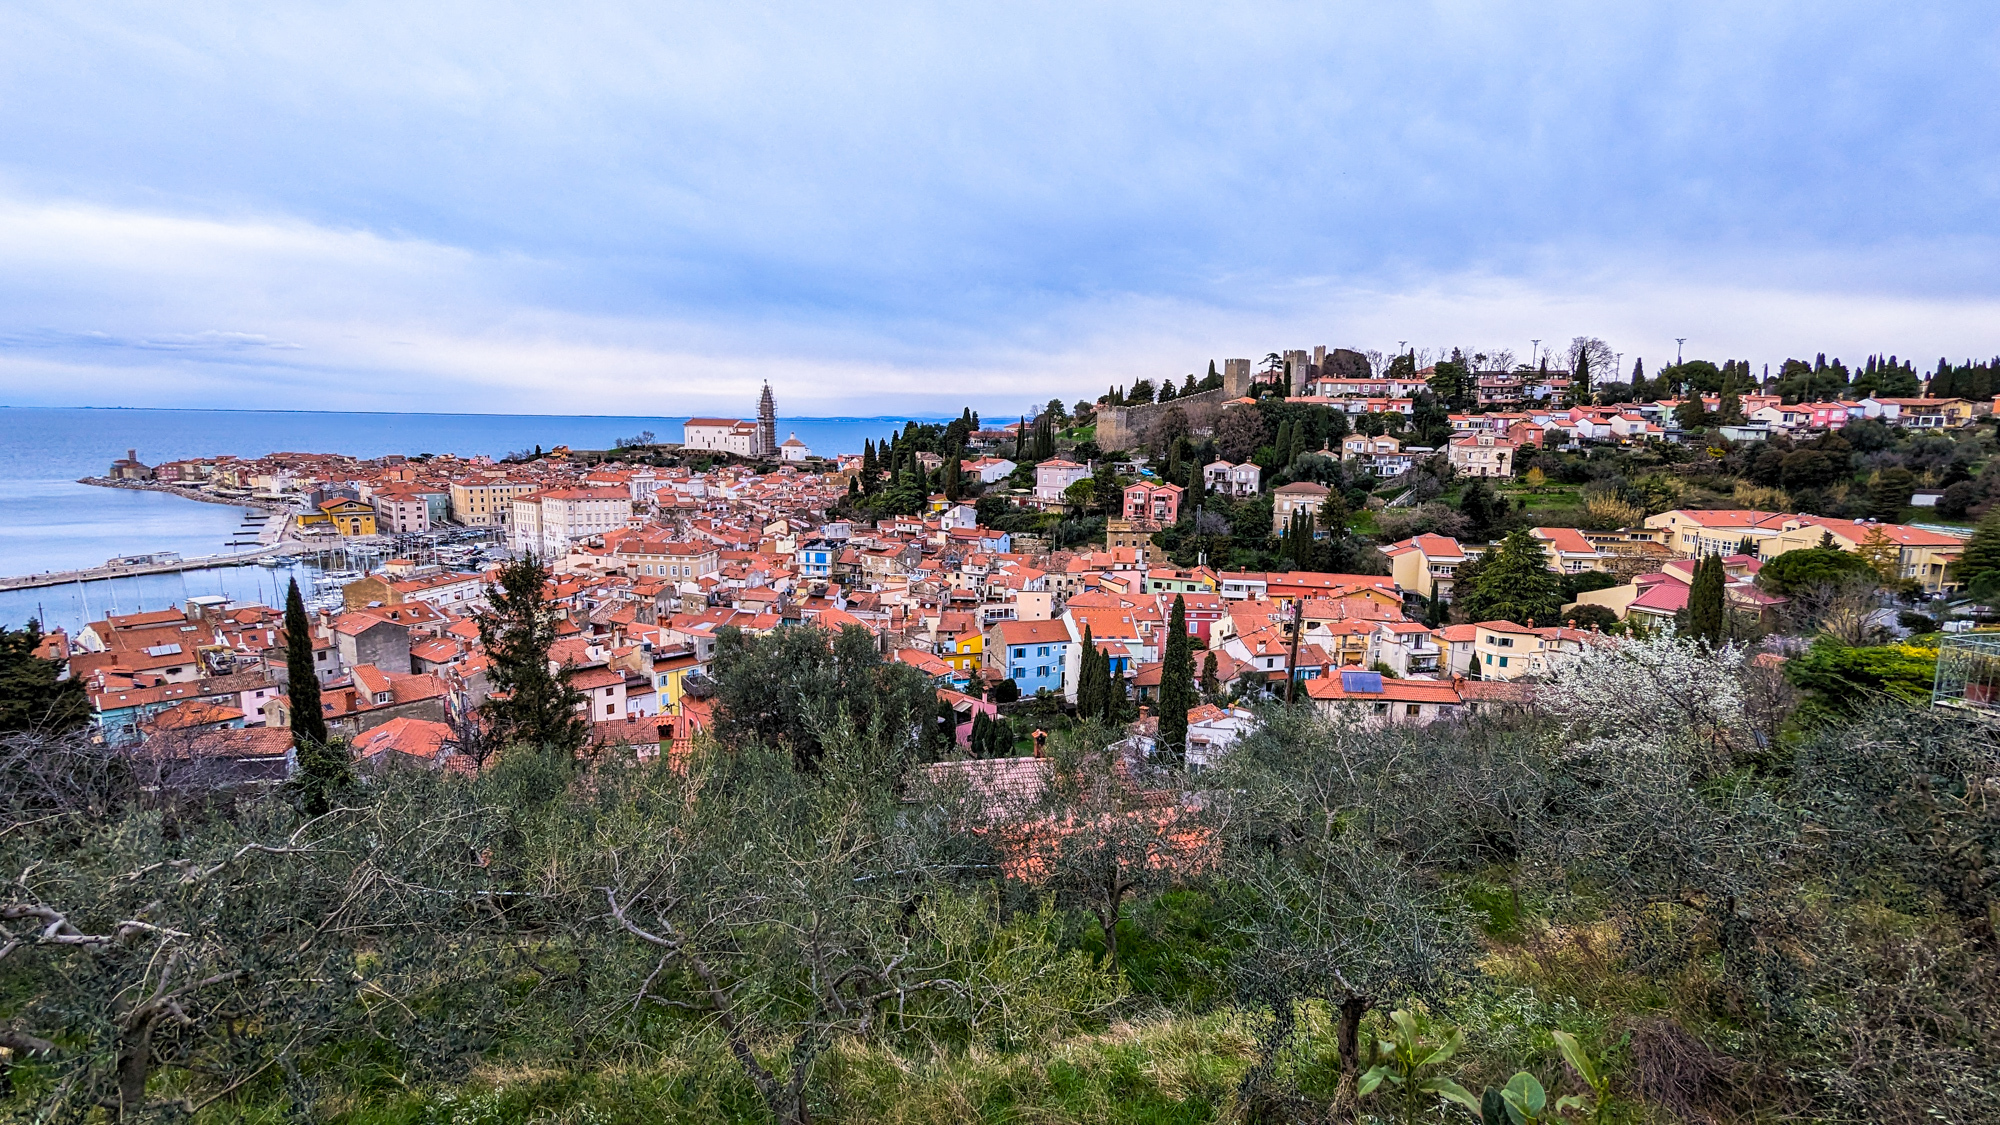 Piran sa nachádza na poloostrove Istria a leží pri Jadranskom mori.